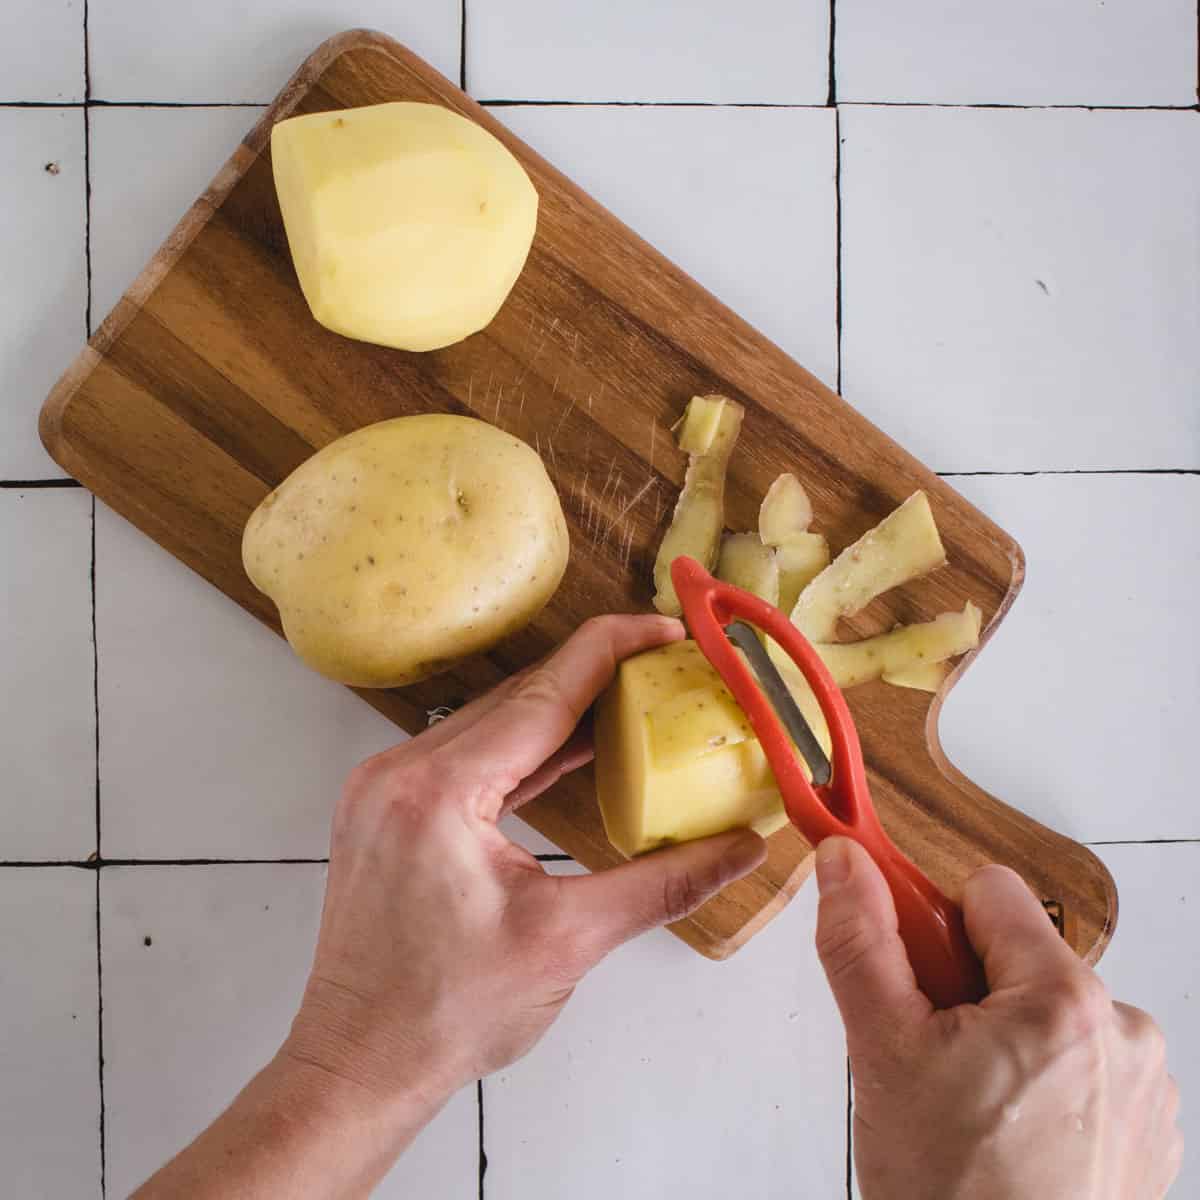 Hands peeling a yellow potato